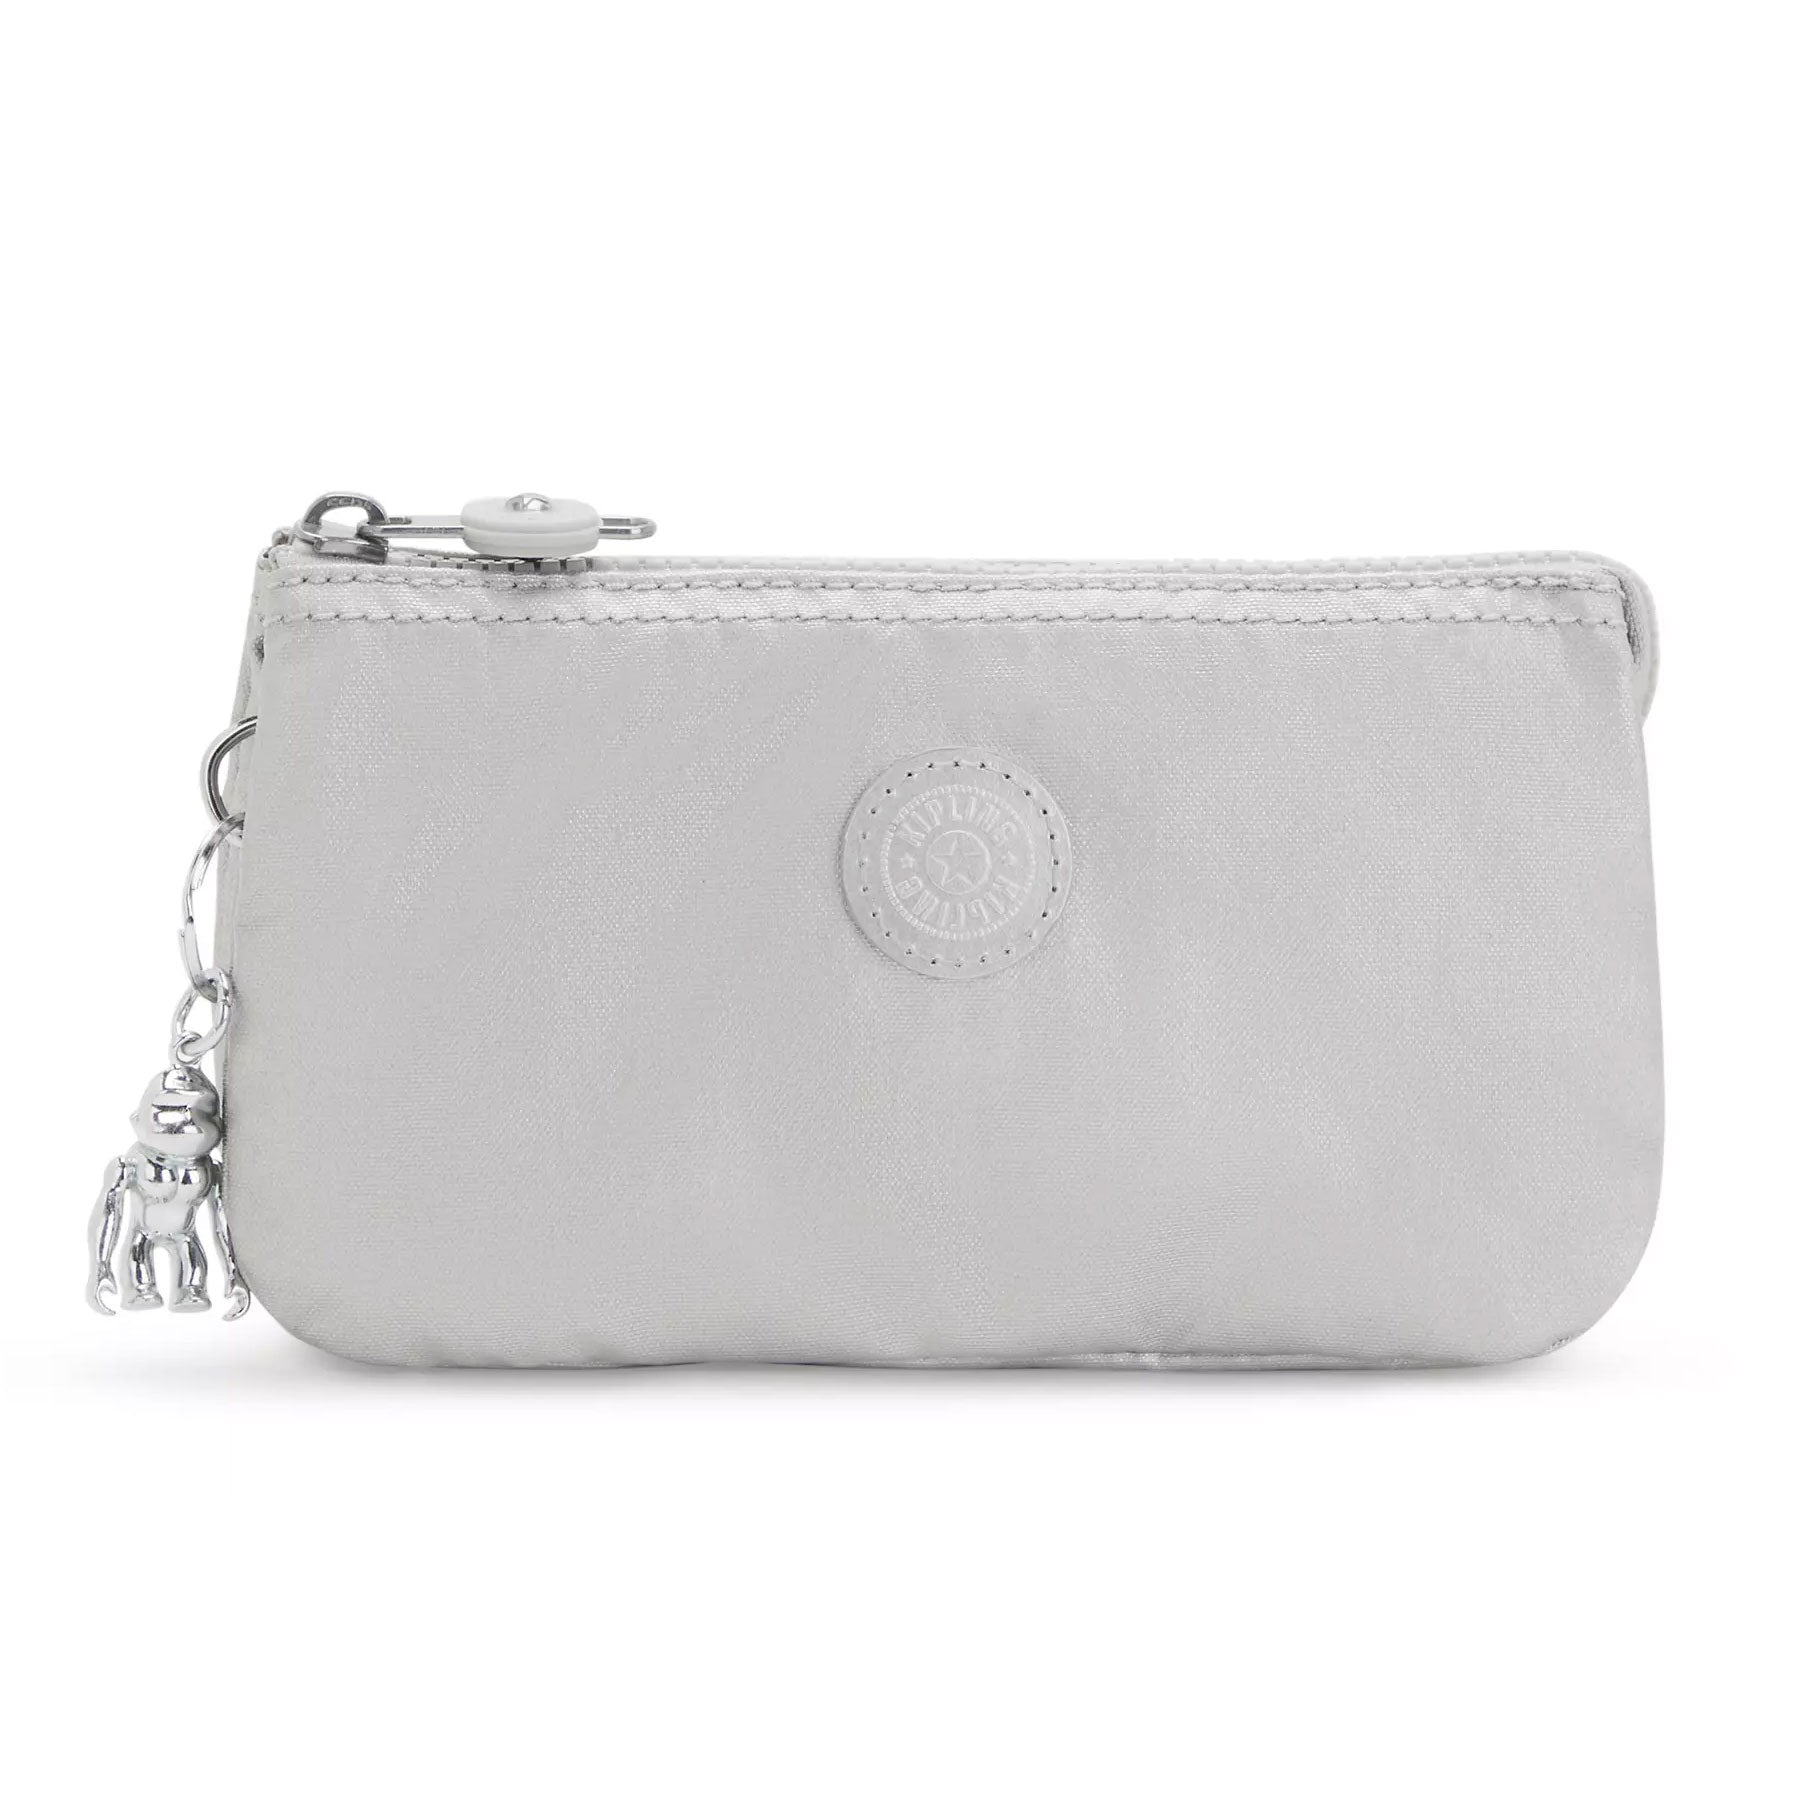 Kipling Ceila Shopper Hobo Shoulder Handbag Purse Large Brown Suede leather  | eBay